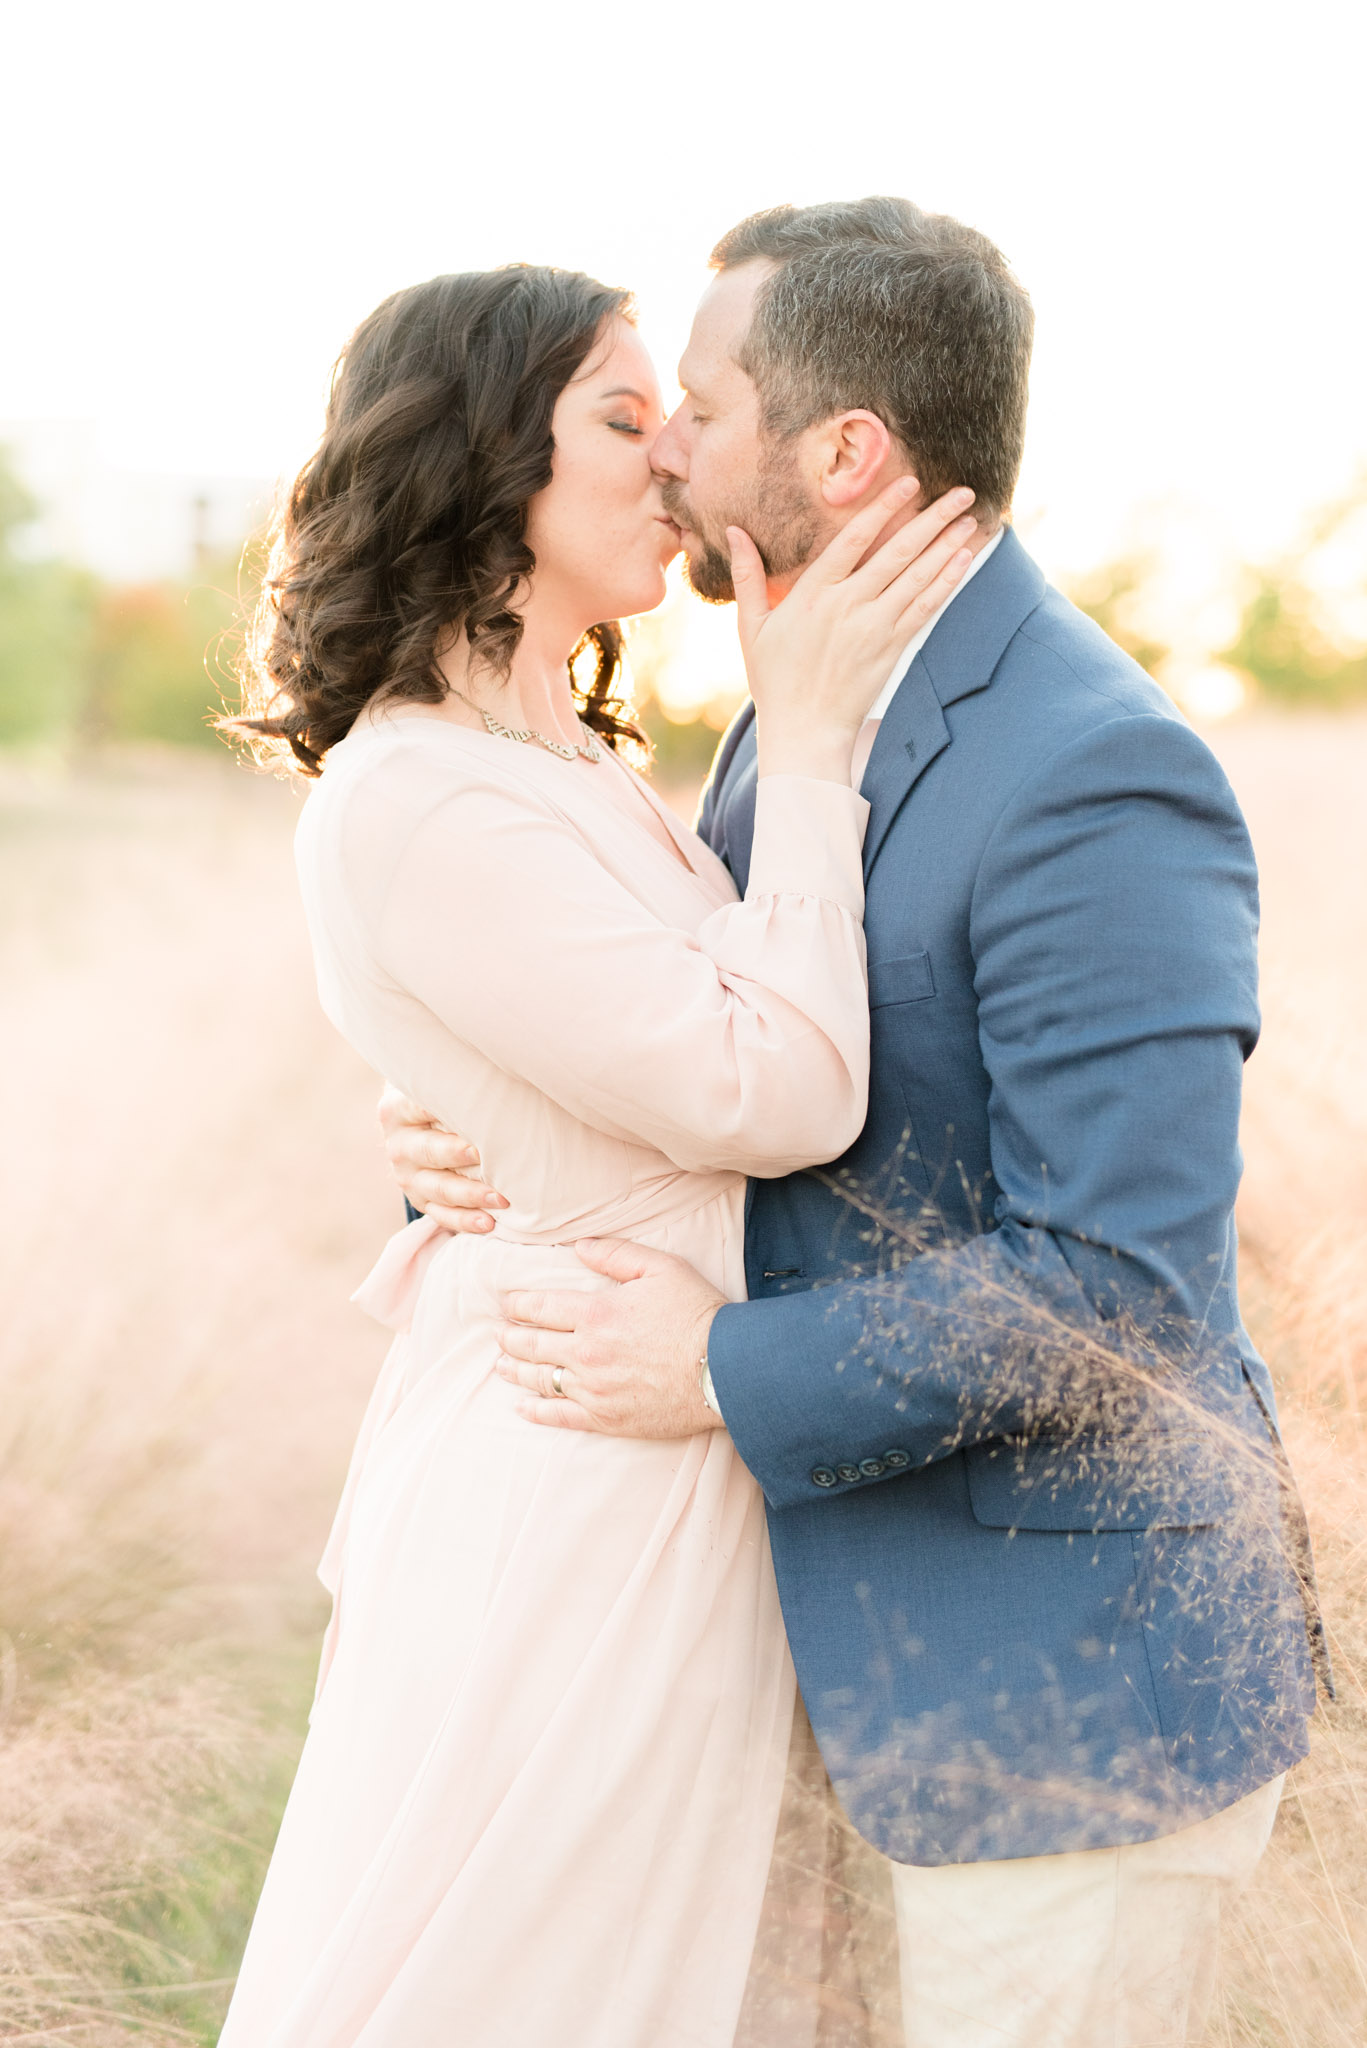 Married couple kiss in field.